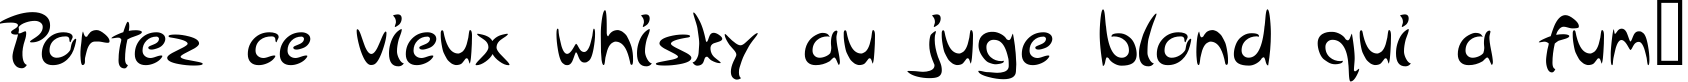 Пример написания шрифтом Arabolical 1 текста на французском